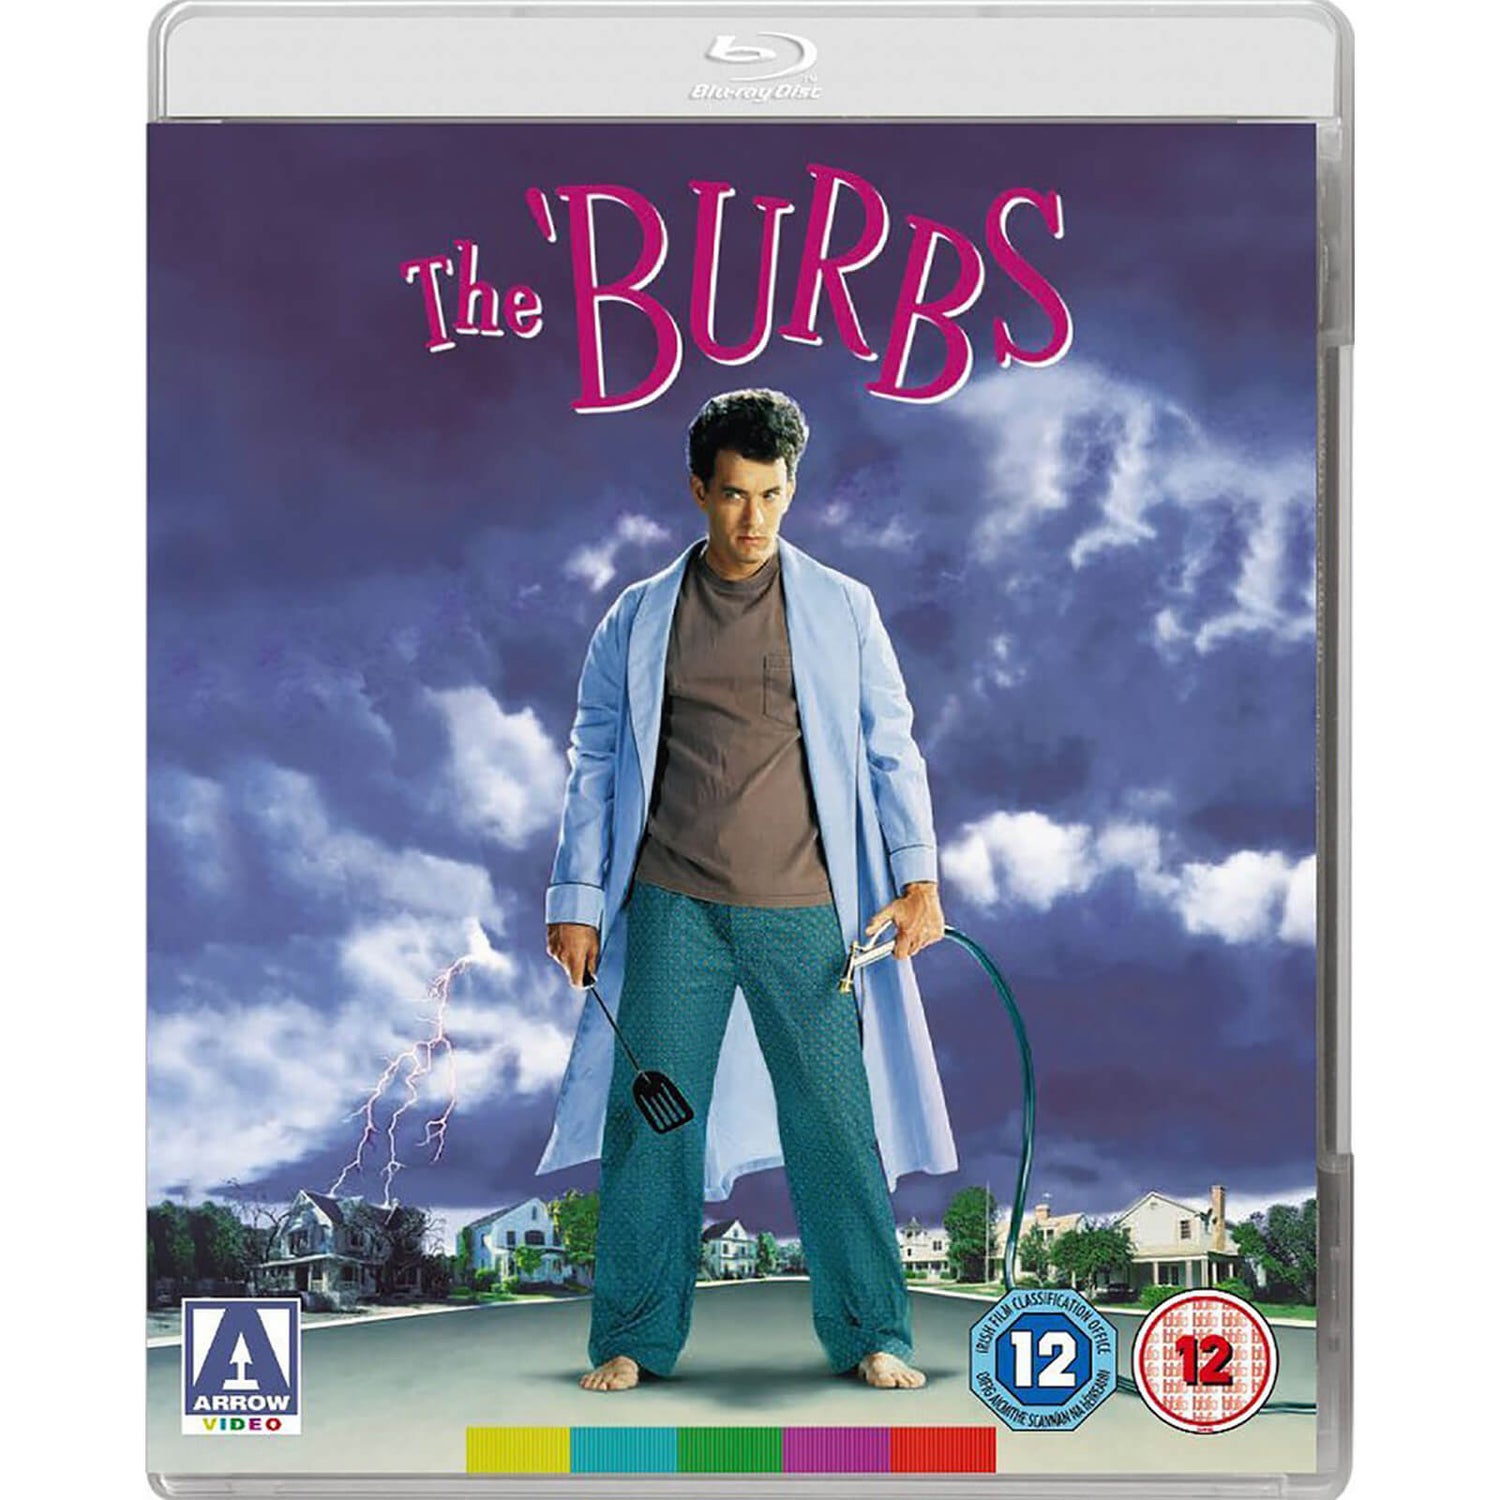 The 'Burbs Blu-ray